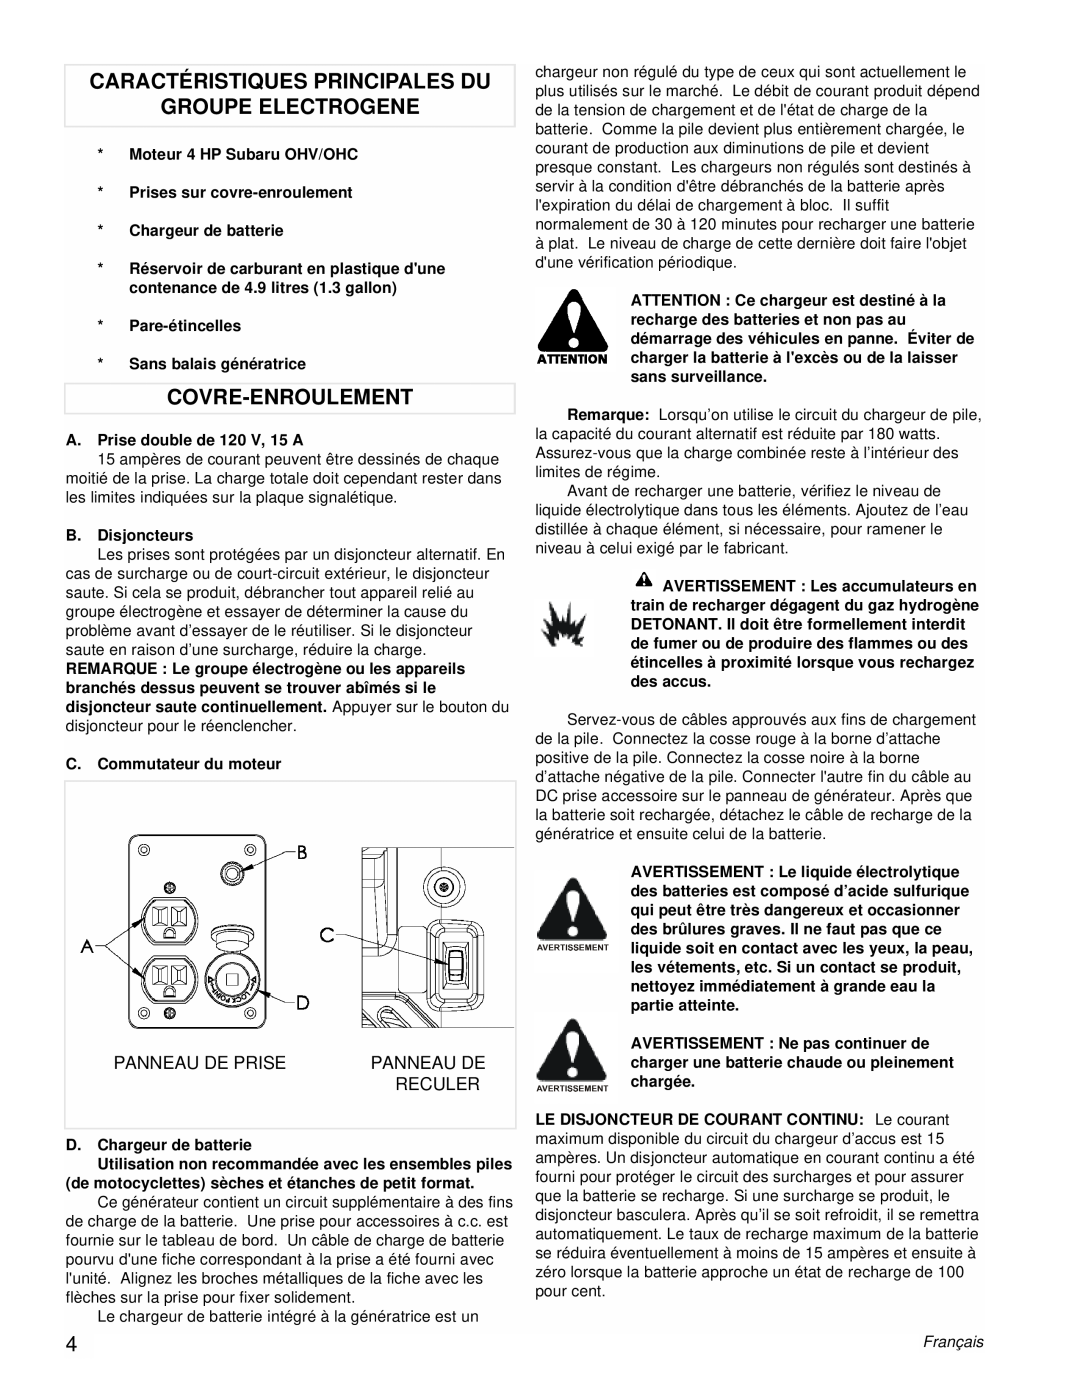 Powermate PM0431802 manual Caractéristiques Principales Du Groupe Electrogene, Covre-Enroulement, Panneau De Prise, Reculer 